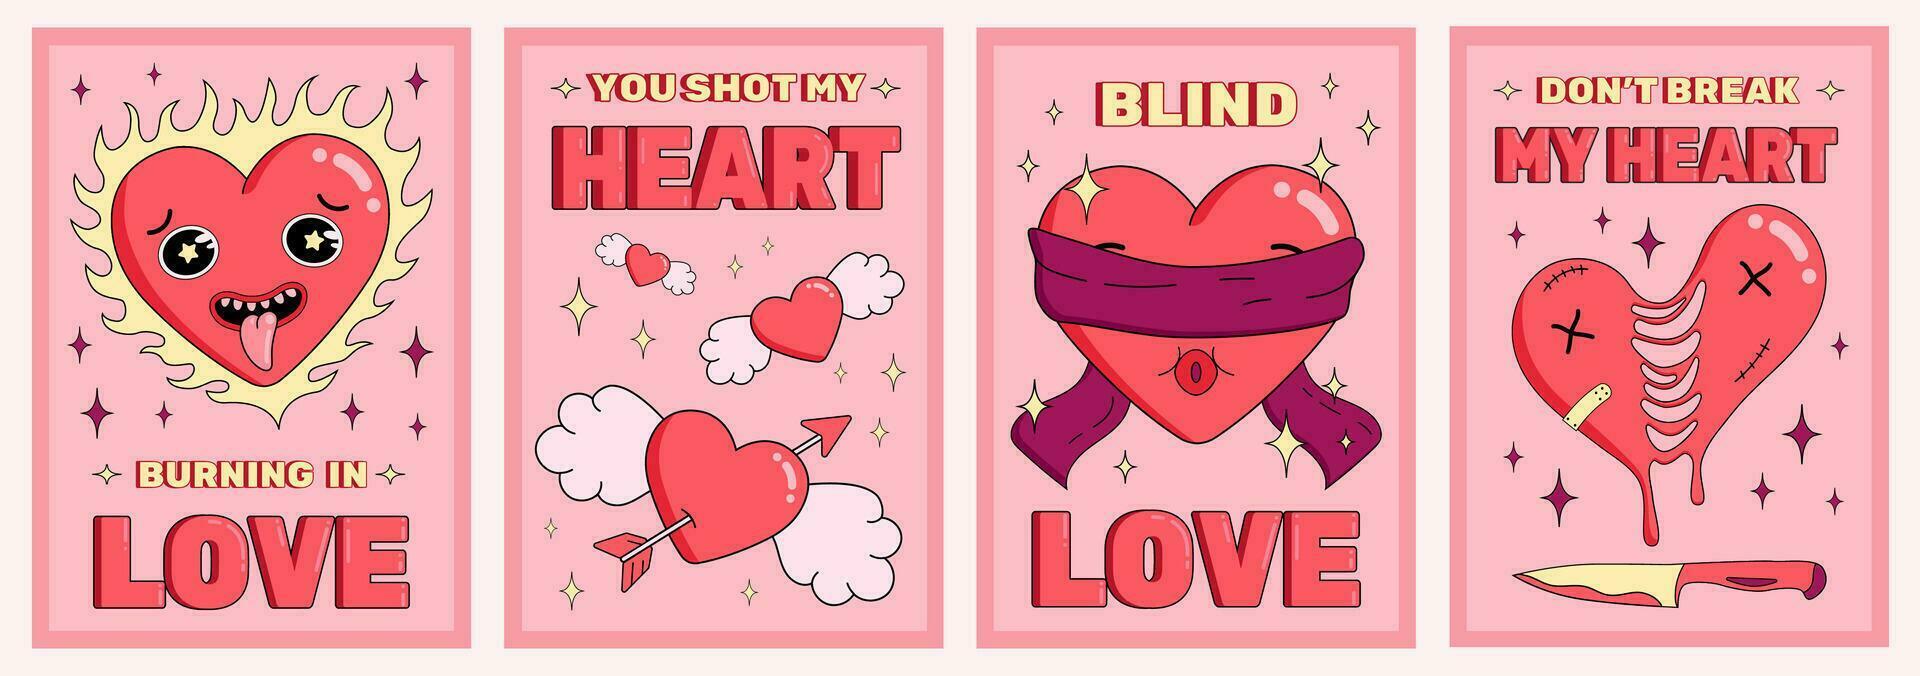 impostato di San Valentino giorno manifesti con carino Groovy cuore personaggi, simboli di amore, verticale striscioni, i regali, cartoline, vettore illustrazione.